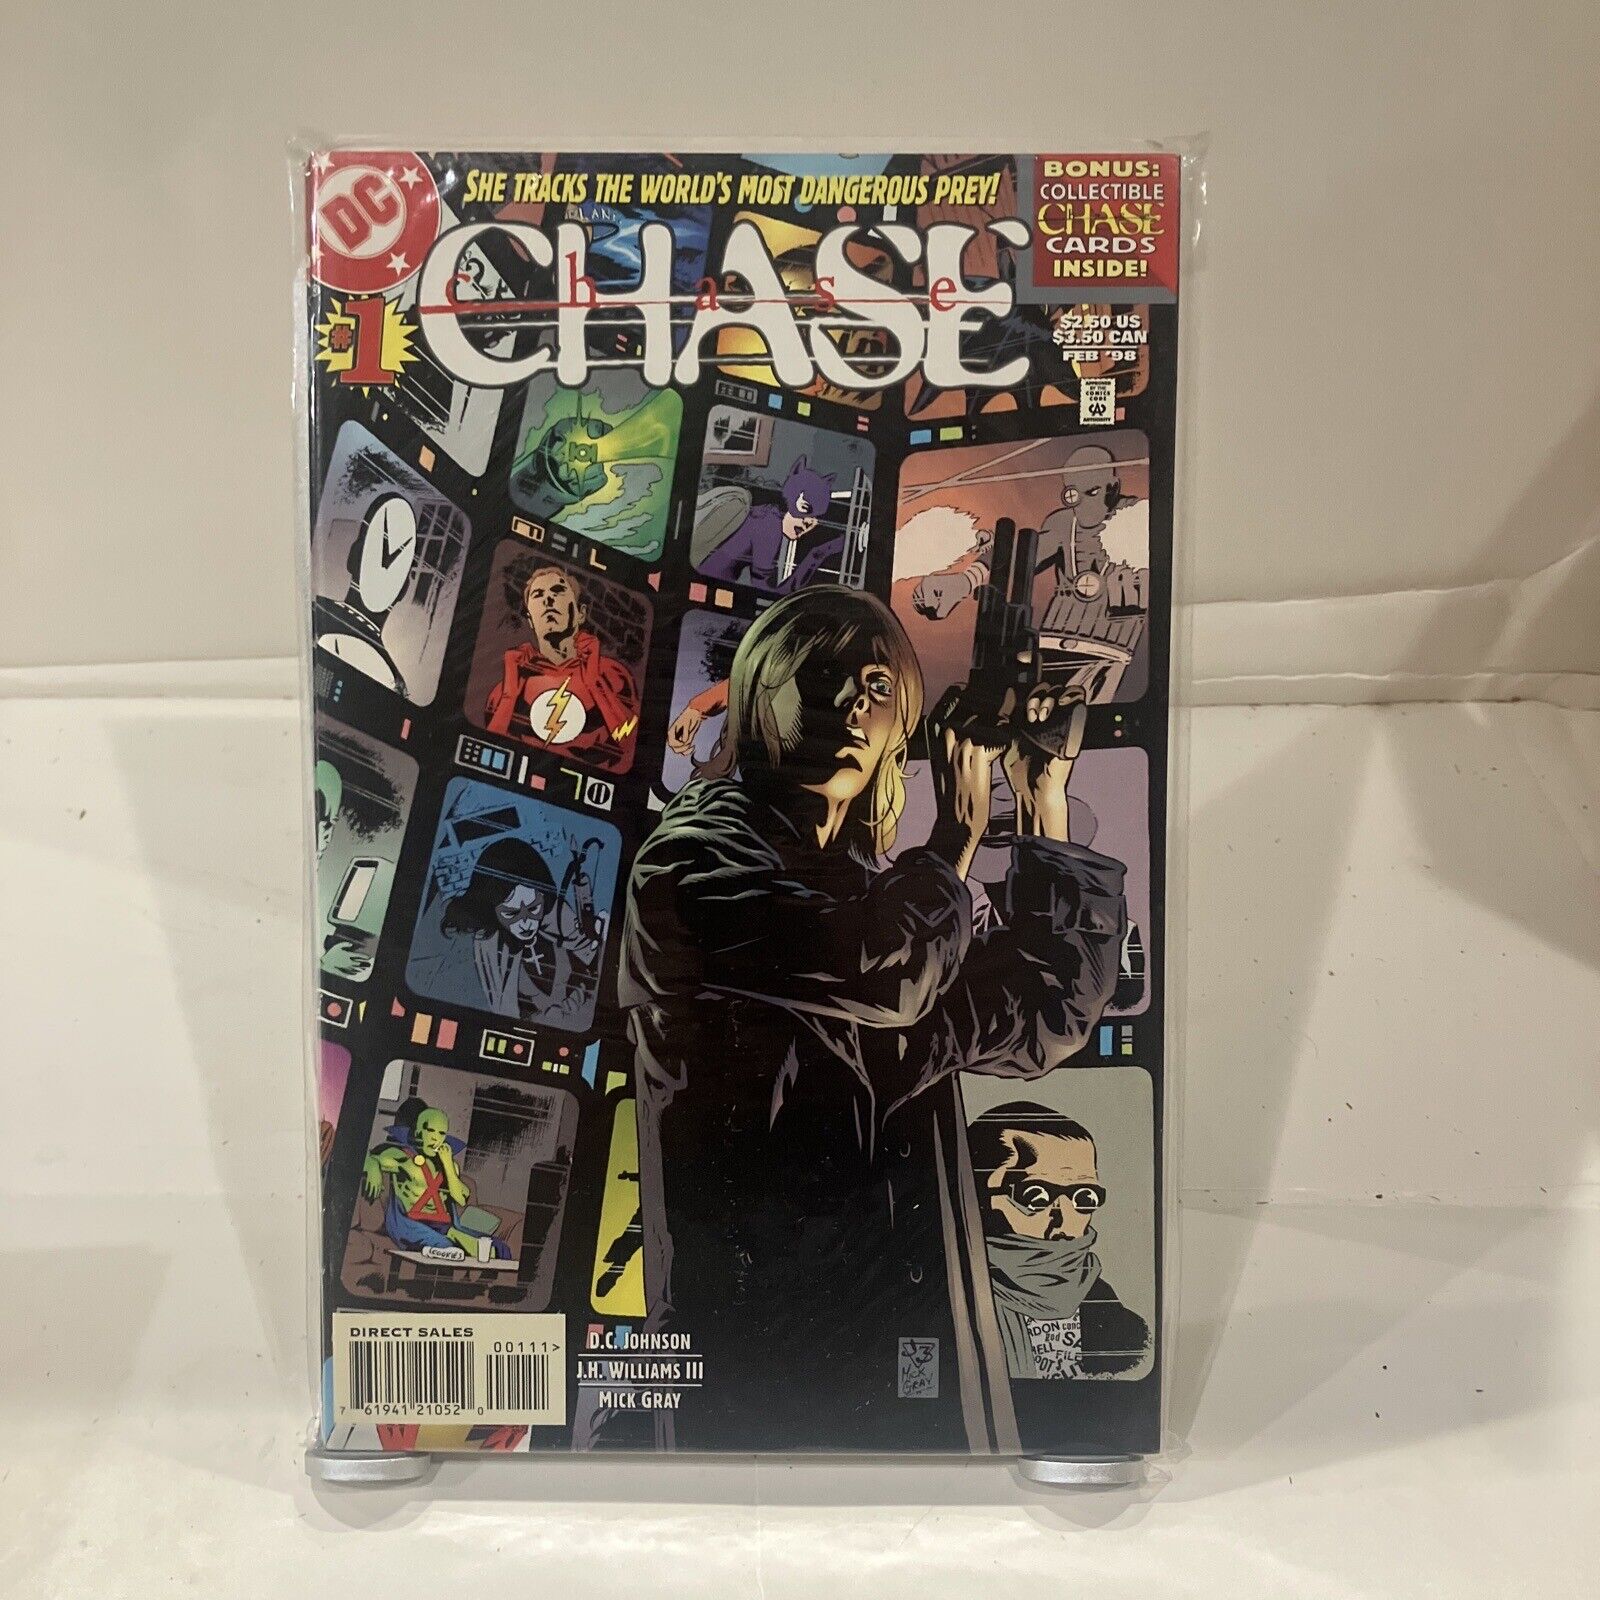 Chase #1 (DC Comics, 2011 February 2012)